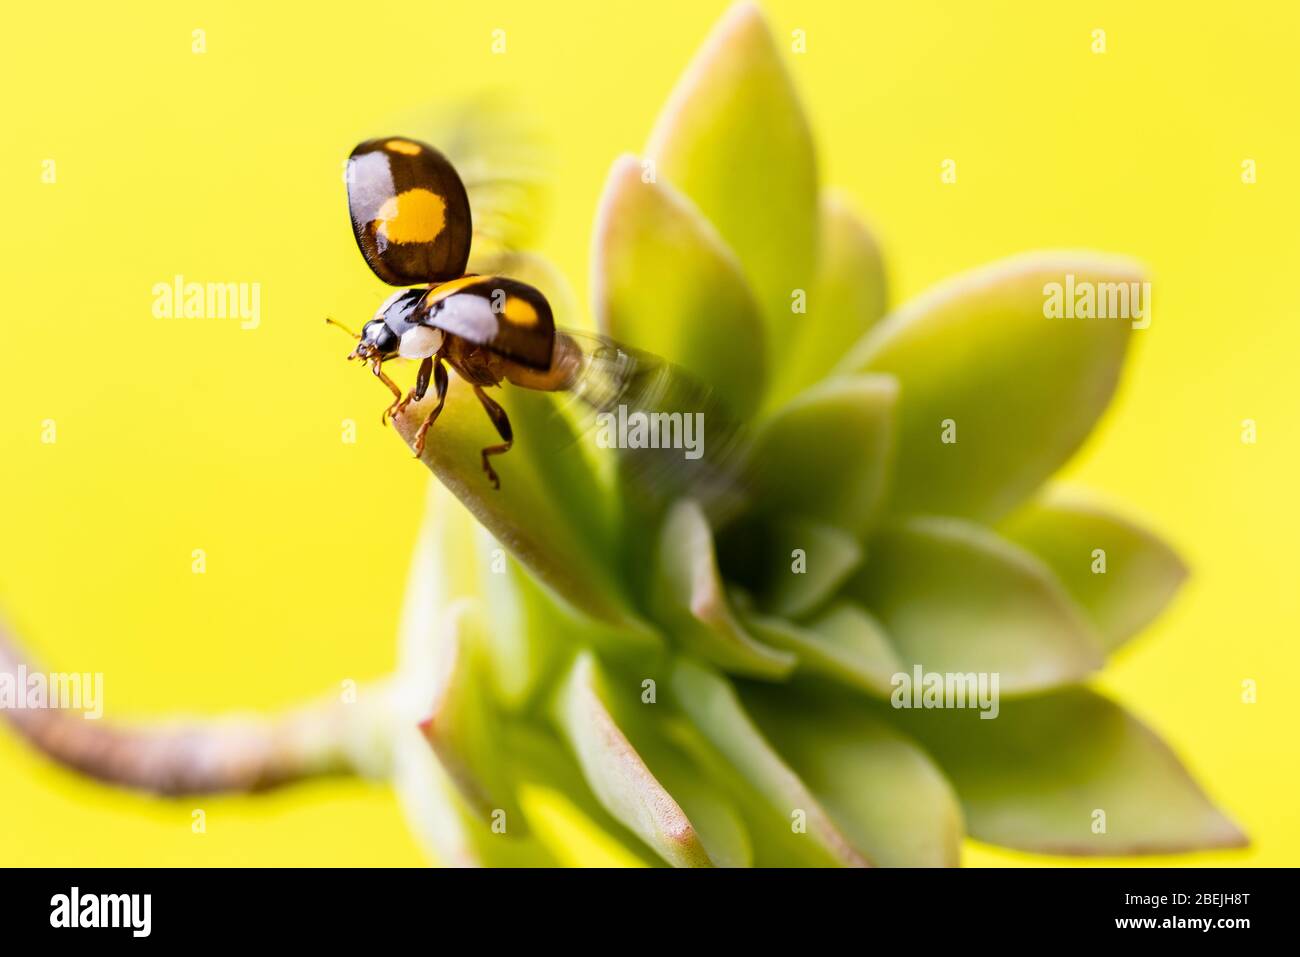 Macro-immagine di un ladybug, nel momento in cui il volo si distingue con le ali anteriori aperte Foto Stock